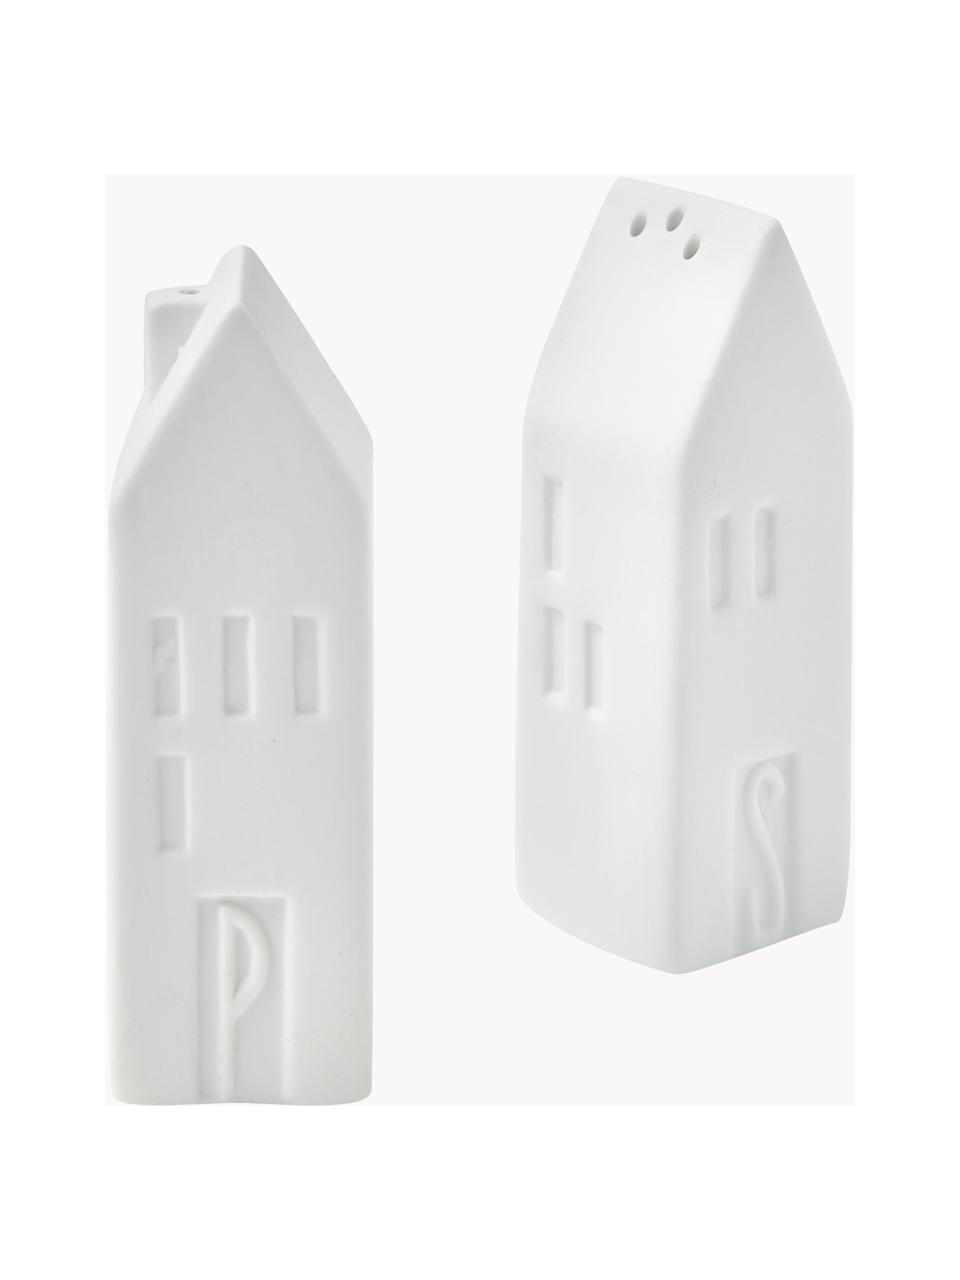 Salz- und Pfefferstreuer Home aus Porzellan, 2er-Set, Porzellan, Weiß, B 3 x H 9 cm